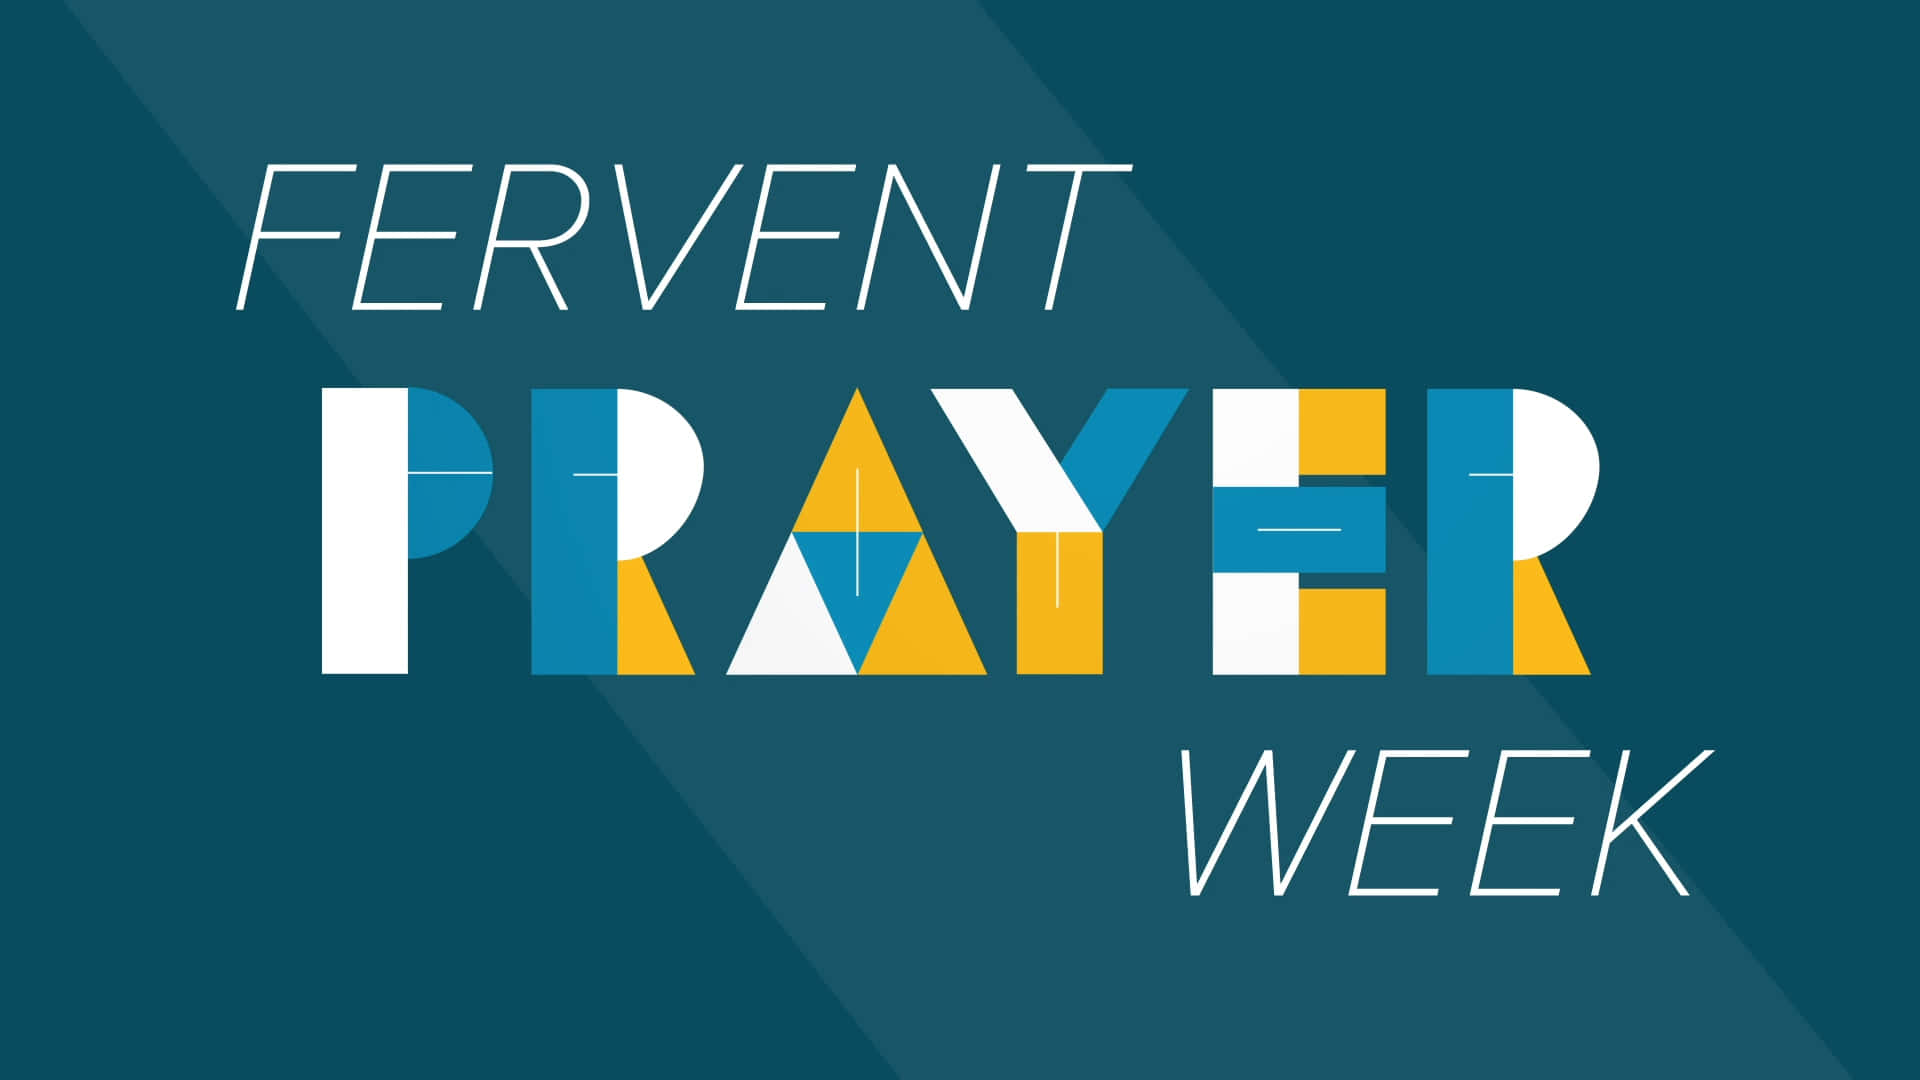 Fervent Prayer Week Wallpaper